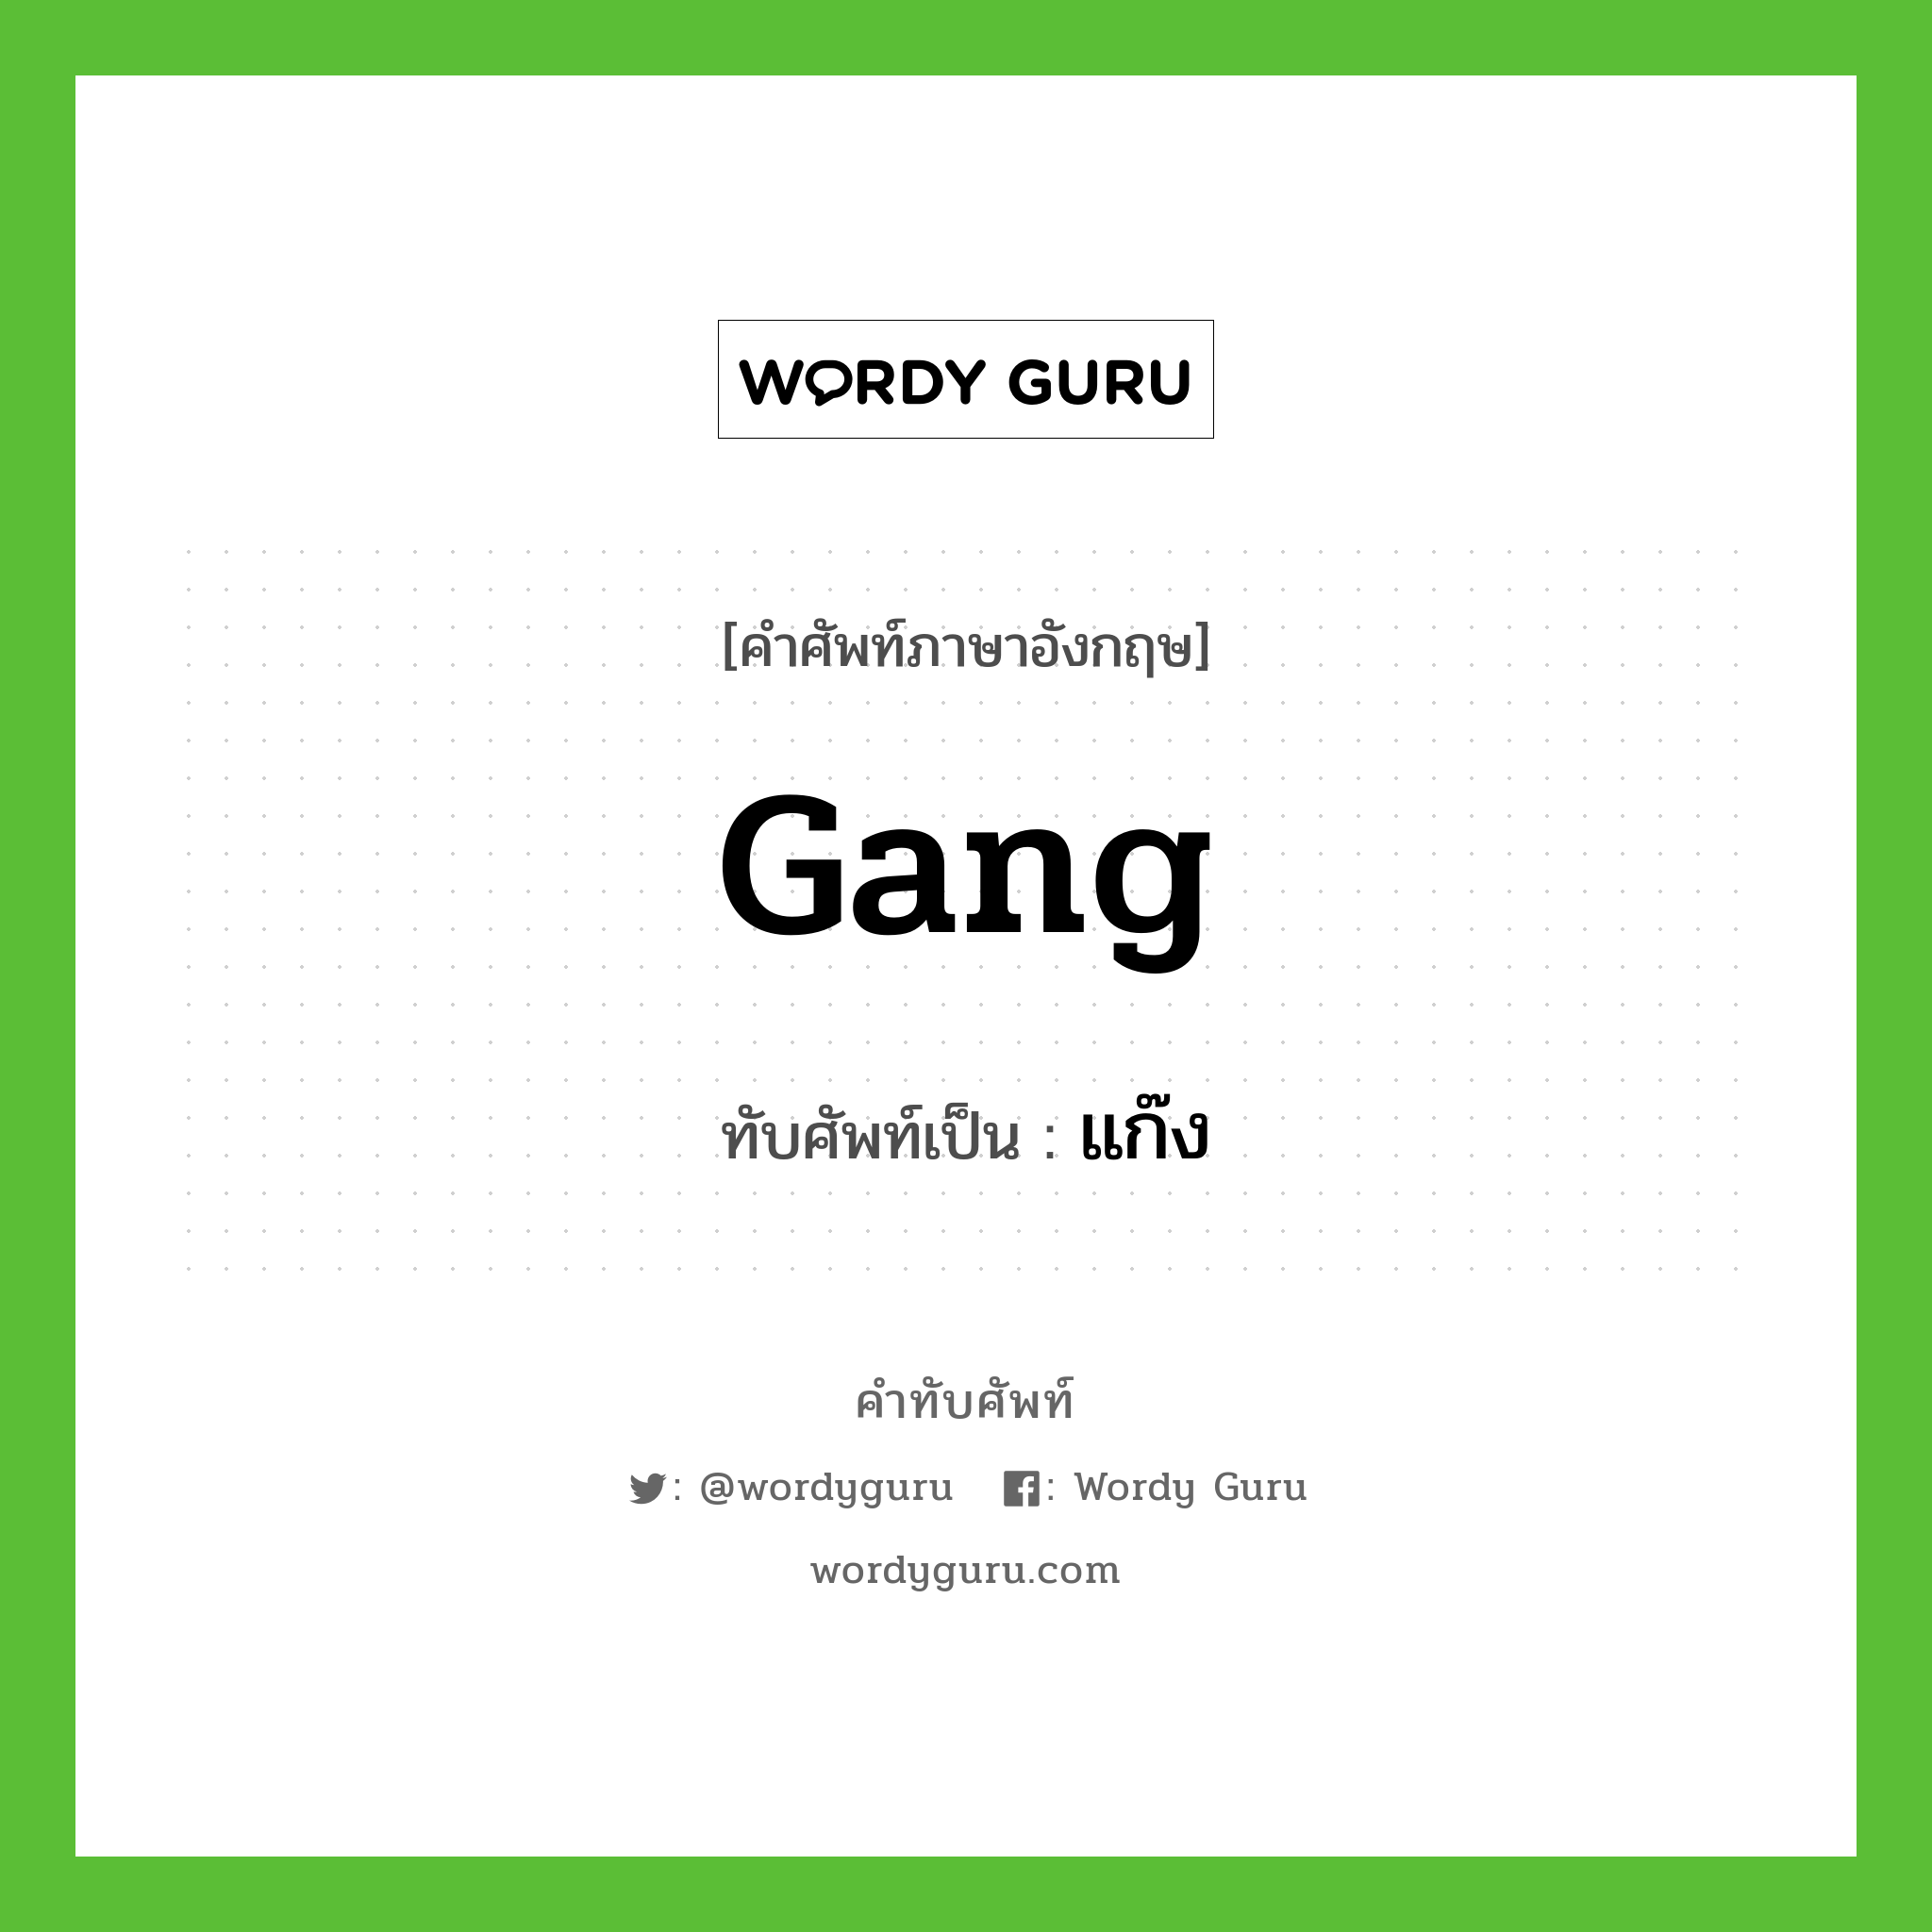 gang เขียนเป็นคำไทยว่าอะไร?, คำศัพท์ภาษาอังกฤษ gang ทับศัพท์เป็น แก๊ง